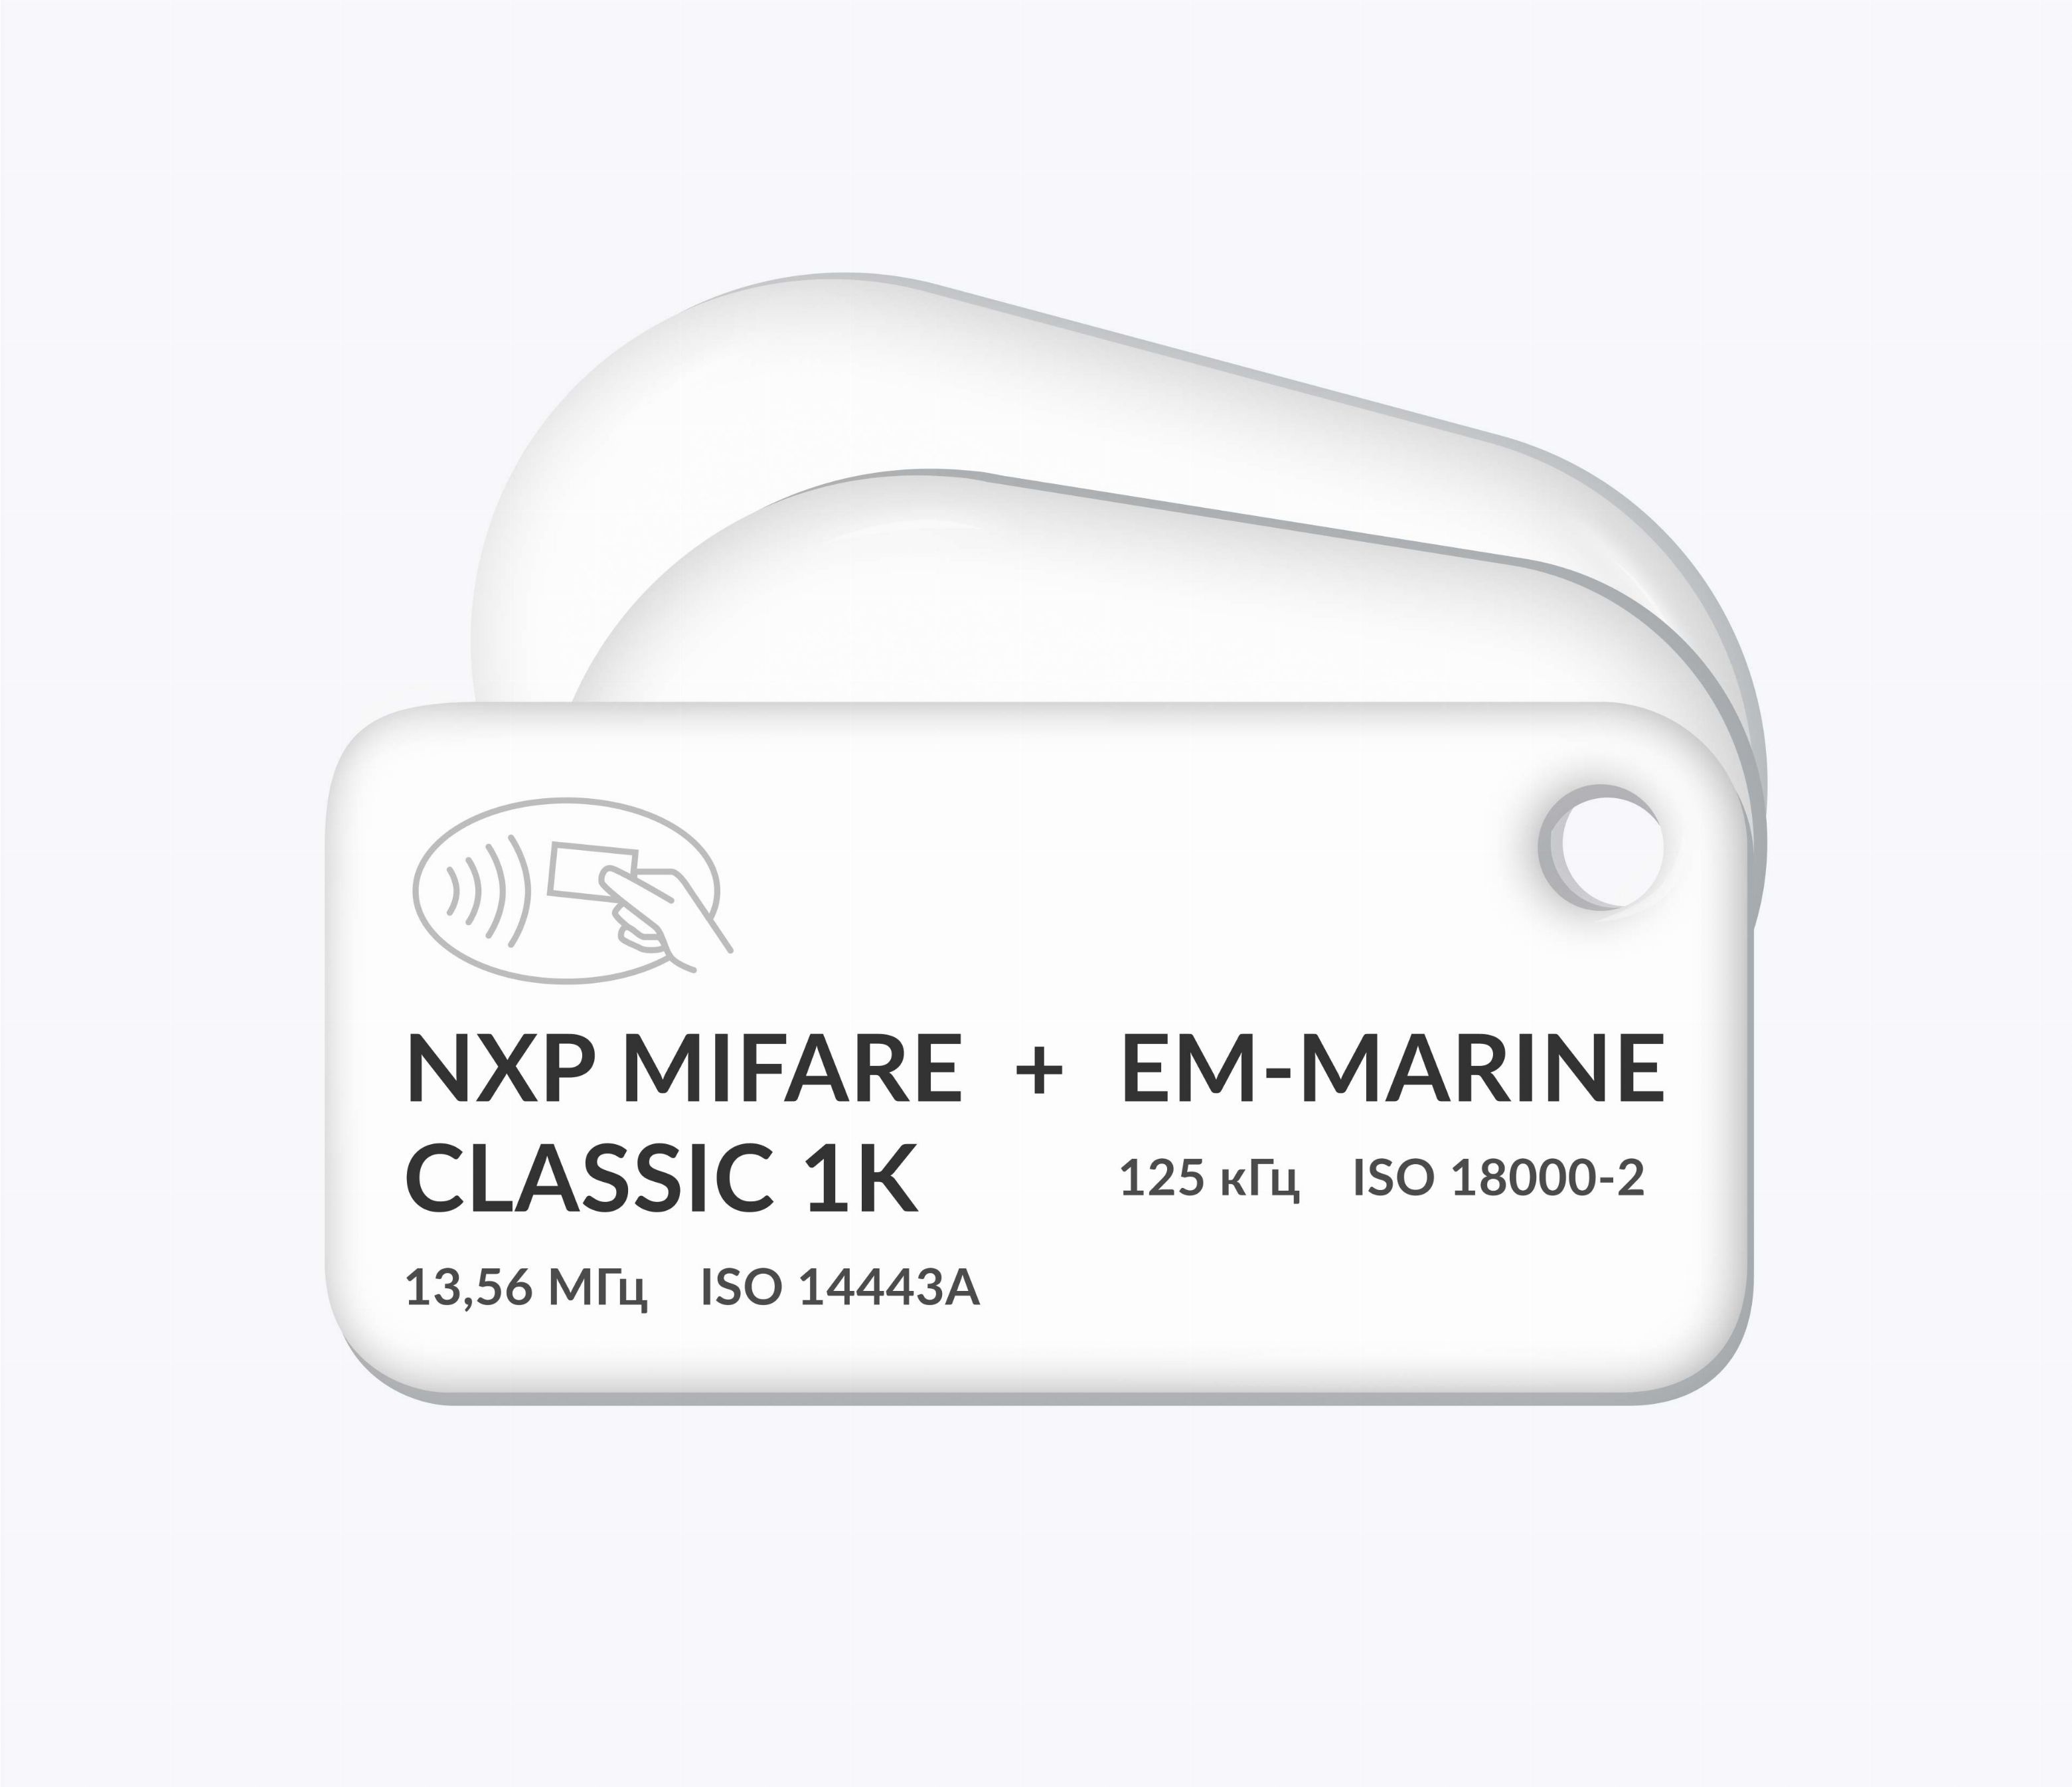 Дуальные RFID-брелоки NEOKEY® с двумя чипами NXP MIFARE Classic 1k + EM-Marine и вашим логотипом Дуальные RFID-брелоки NEOKEY® с двумя чипами NXP MIFARE Classic 1k + EM-Marine и вашим логотипом